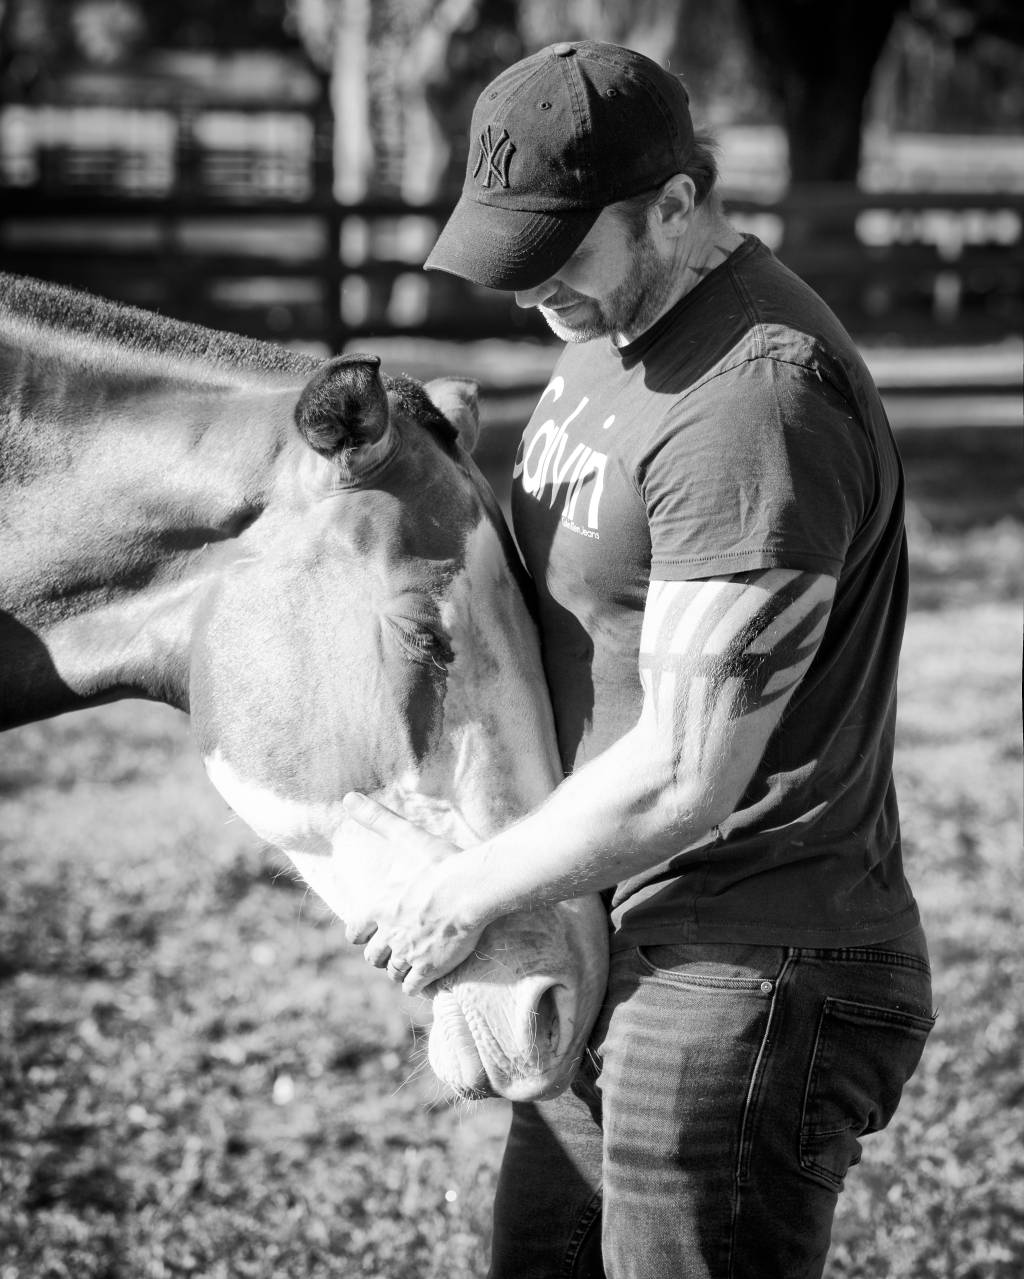 Raphael Macek, fotógrafo especializado em cavalos, interage com cavalo no meio de um gramado. Veste boné e polo. Foto em preto e branco.